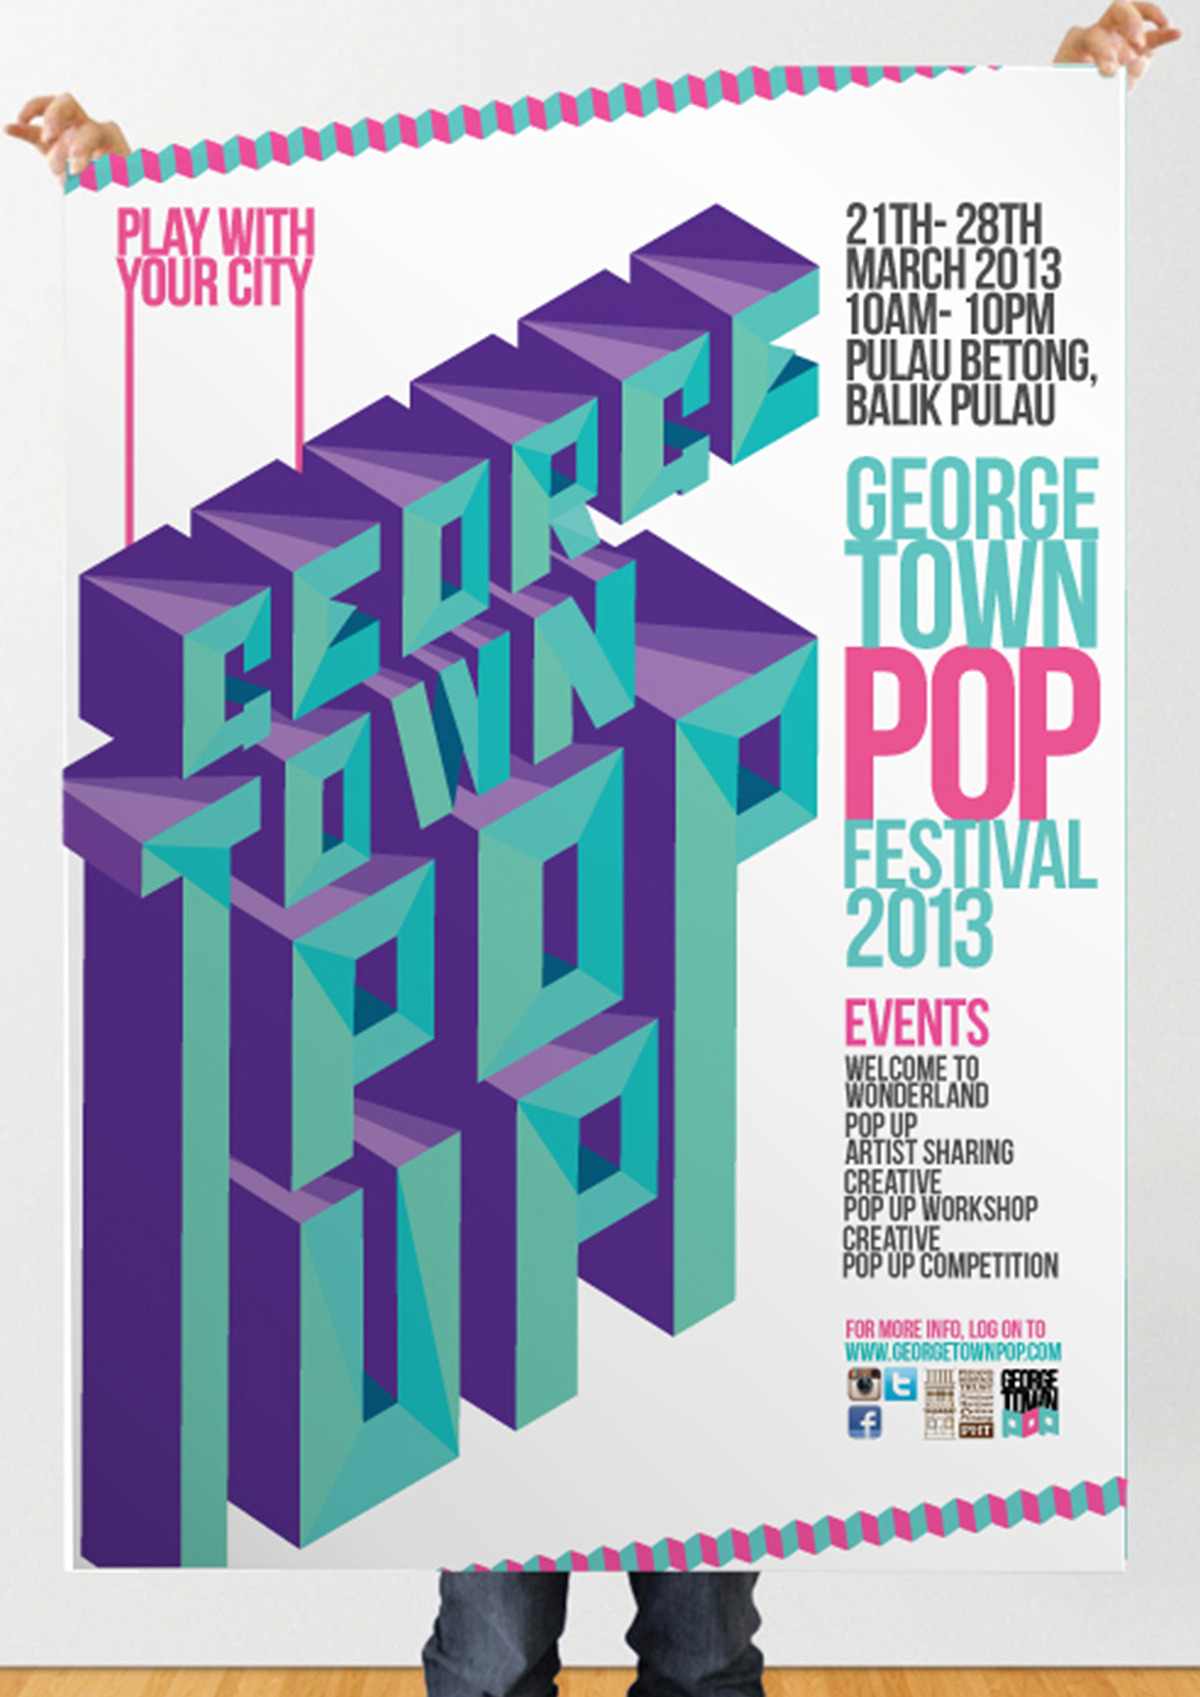 pop up heritage colorful Branding design Event festival campaign poster flyer teaser graphic Badges